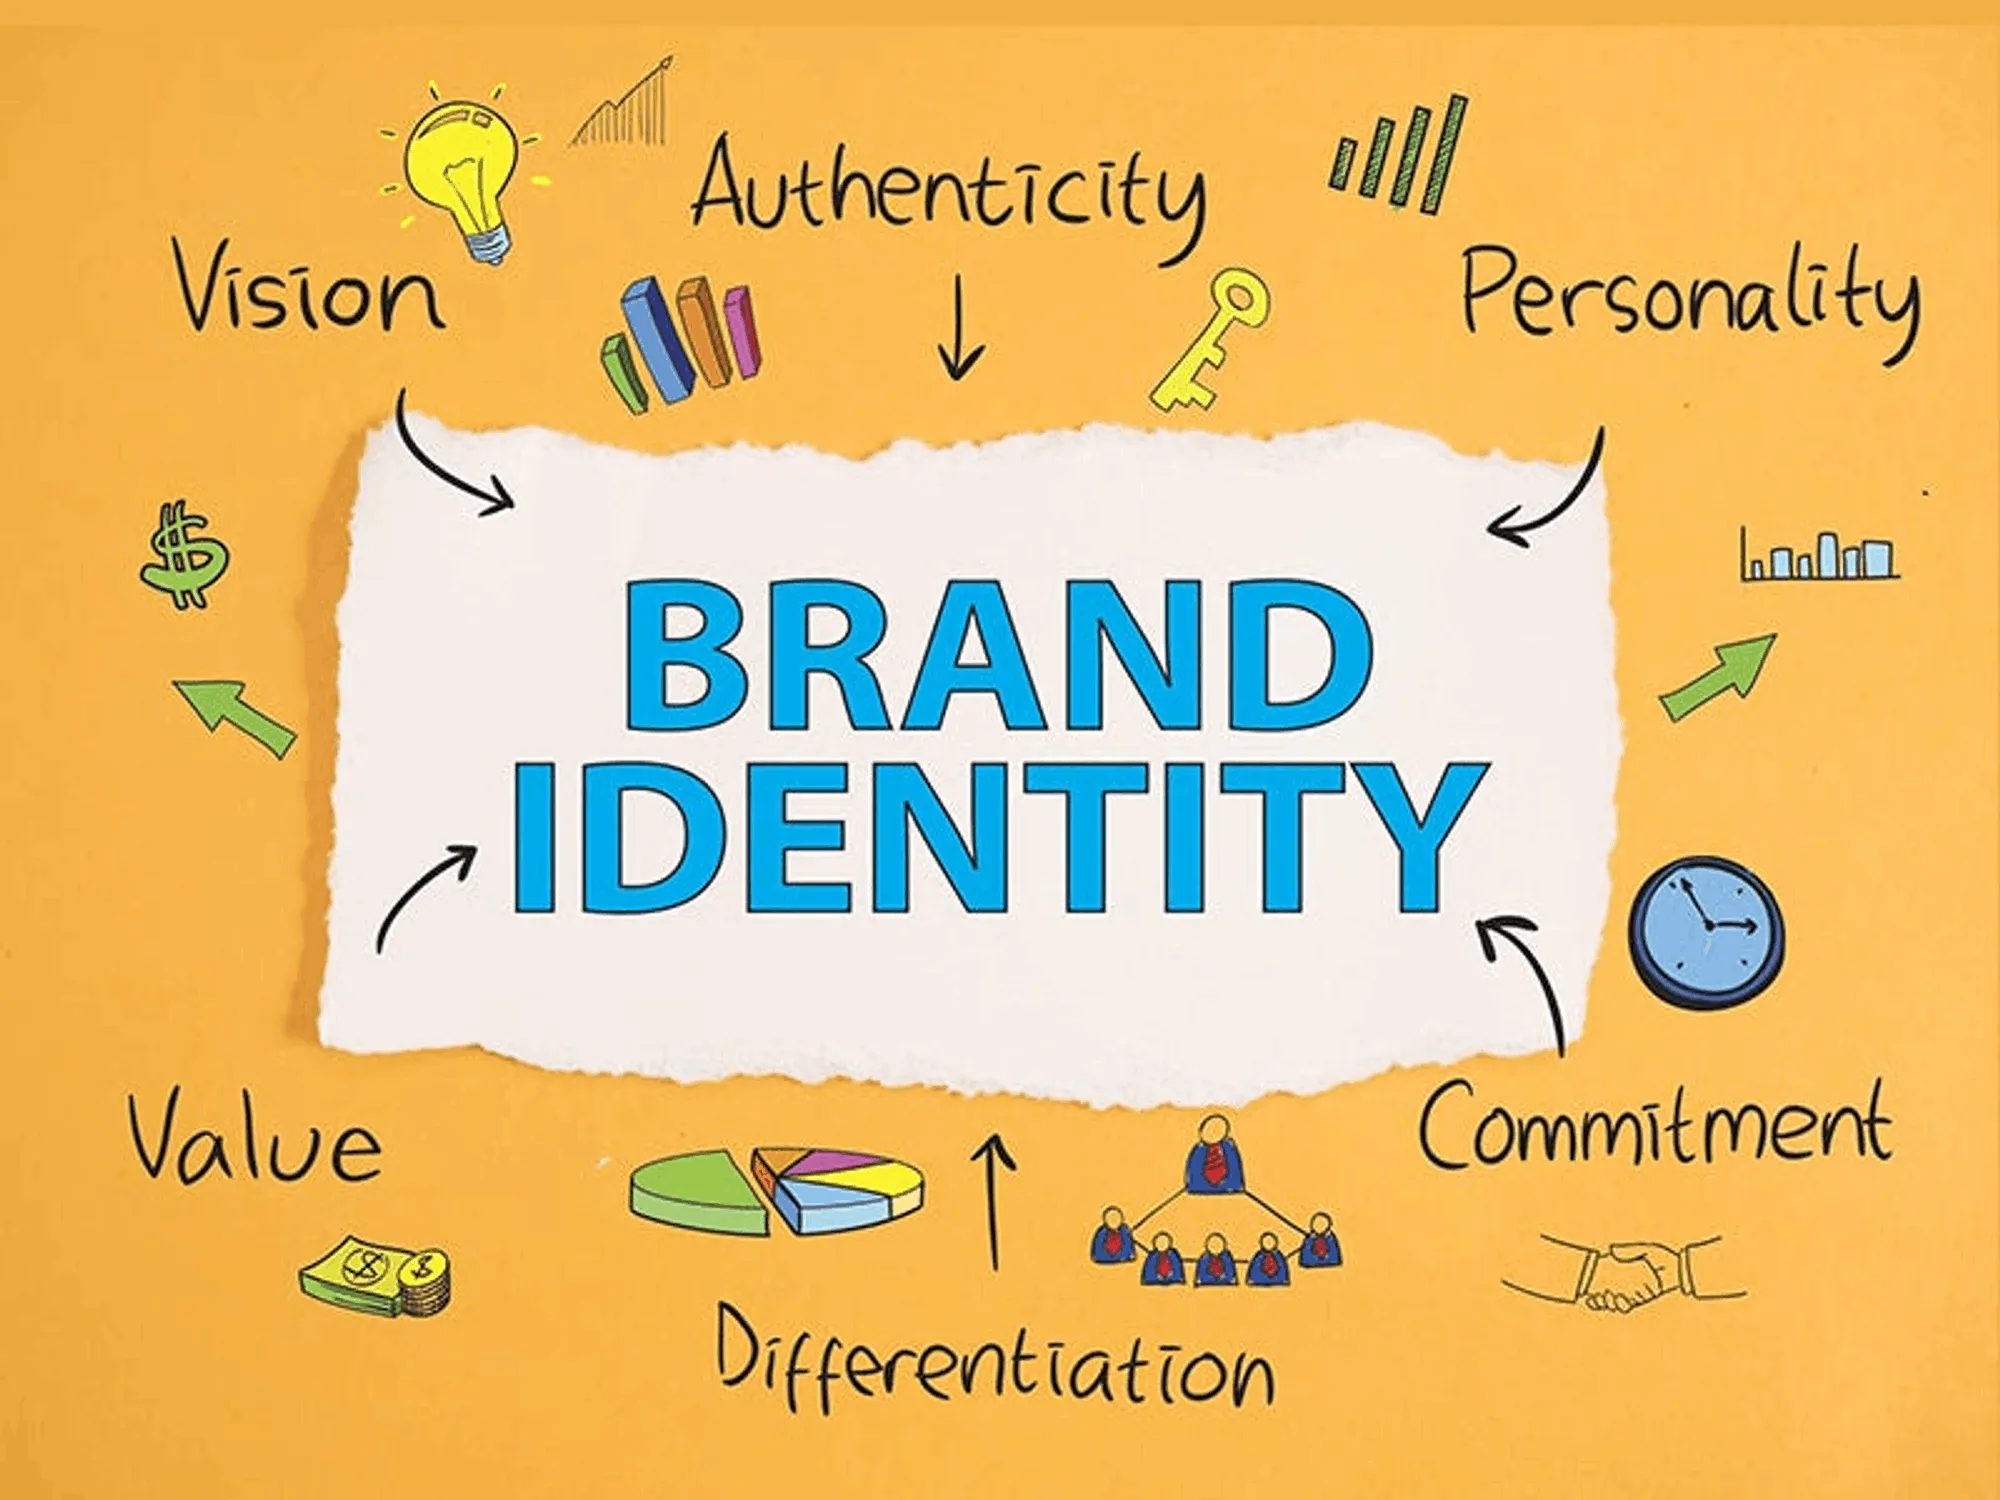 강력한 브랜드 가치를 설계하는 방법 : 독특한 정체성 발휘하기